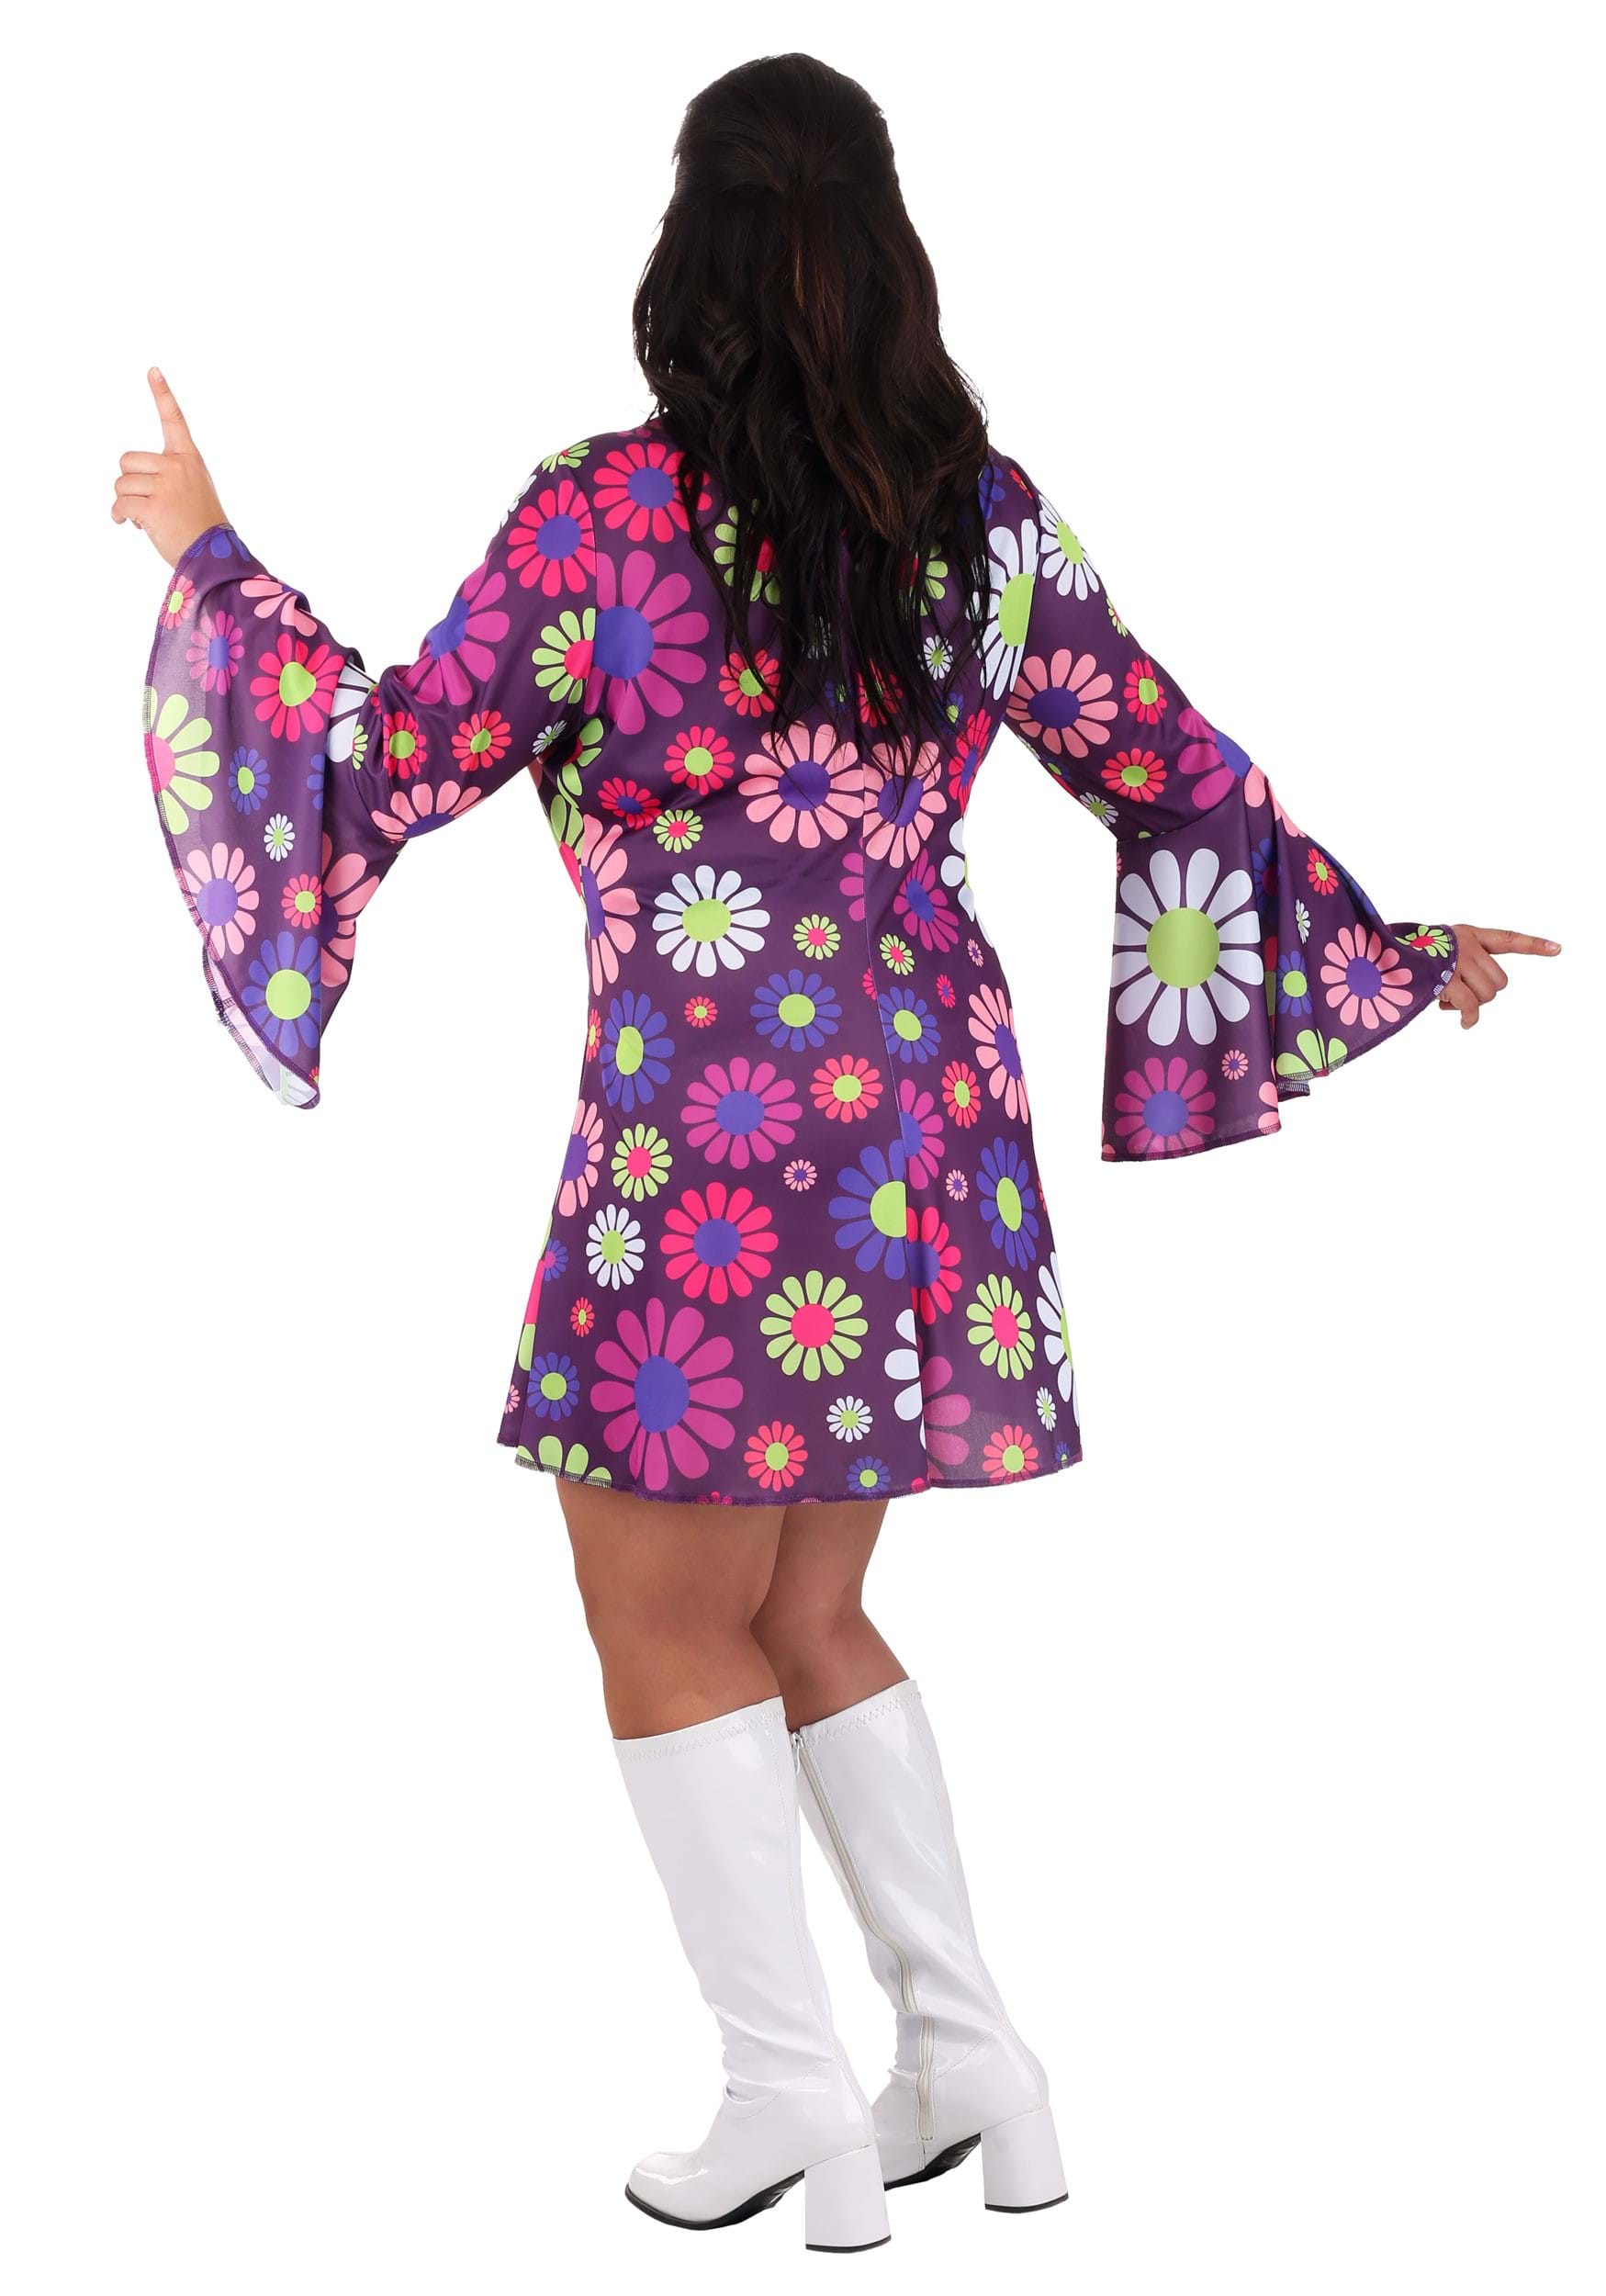 Plus Size Groovy Flower Power Women's Fancy Dress Costume